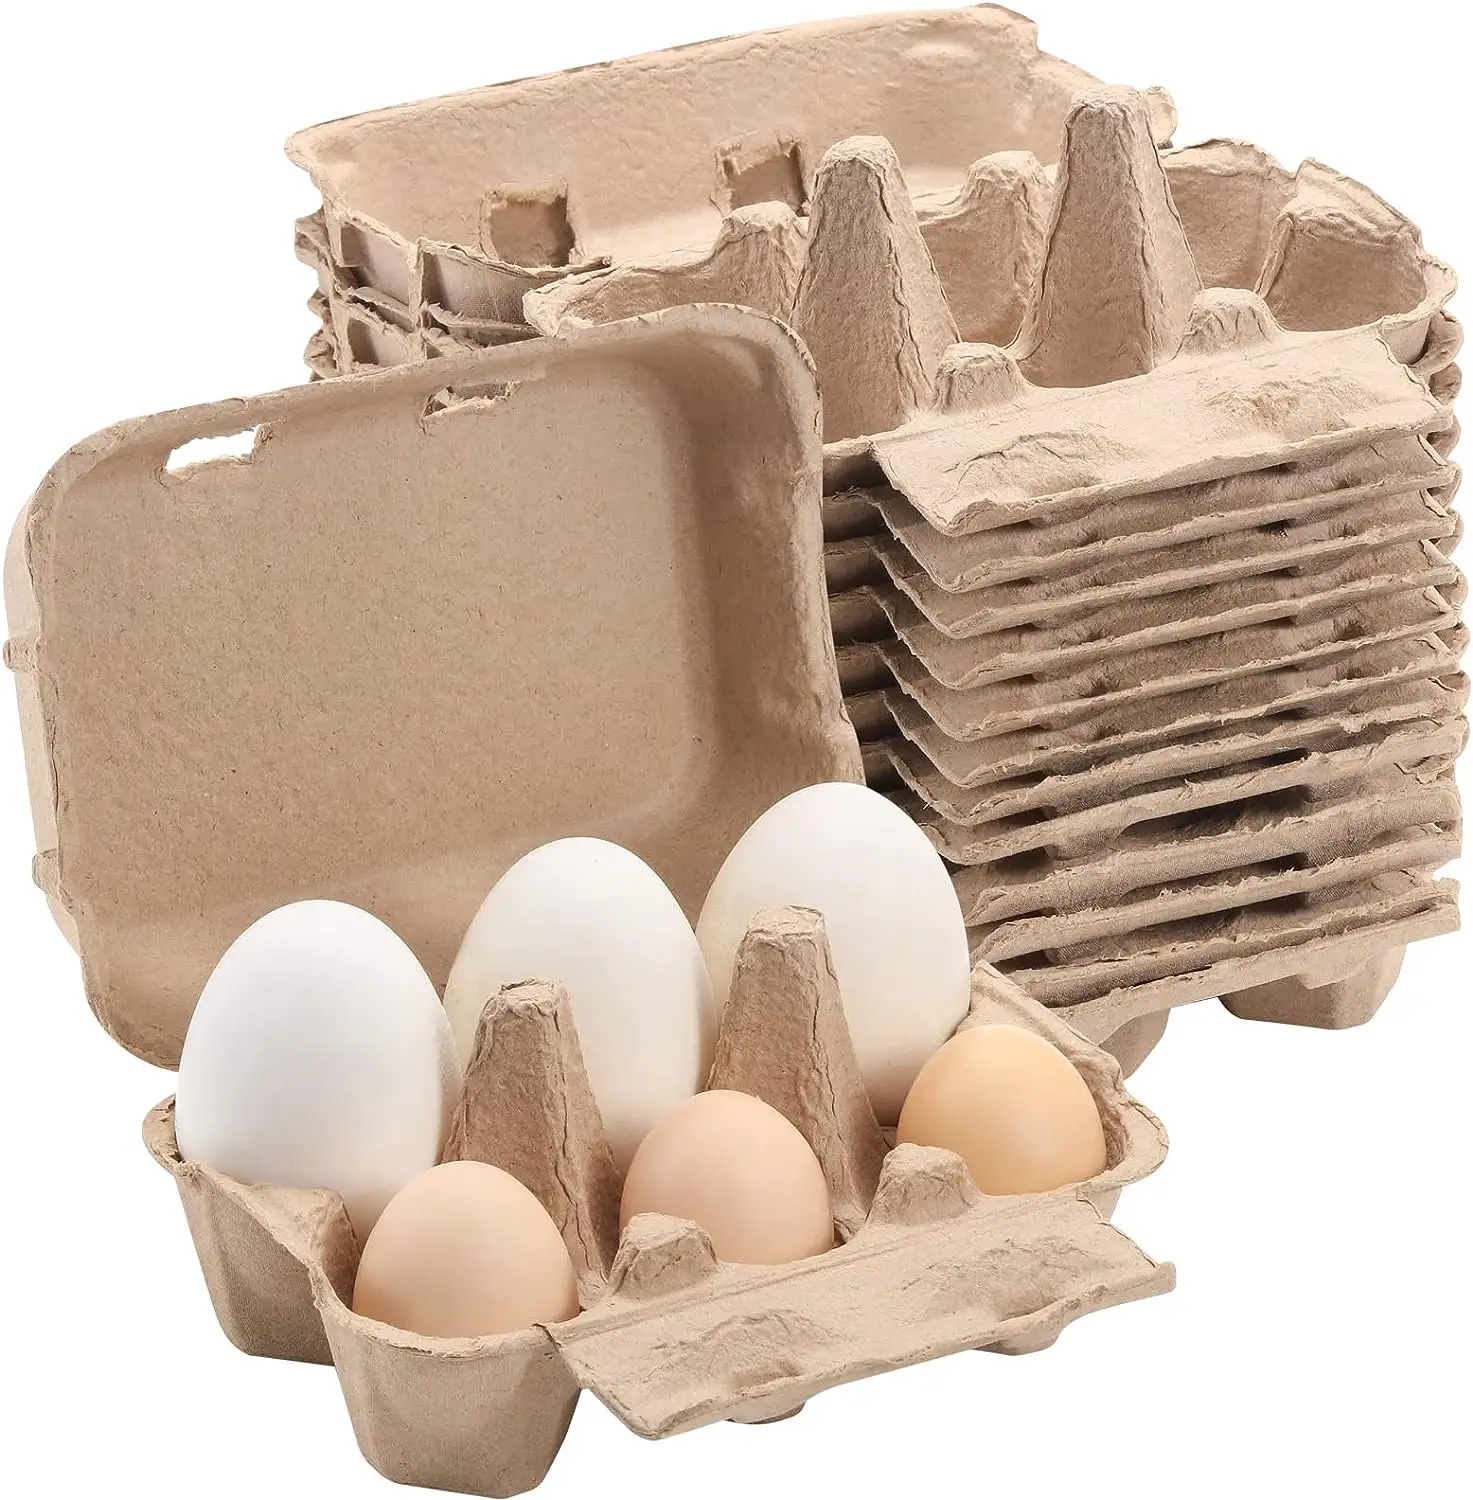 Renkli yarım düzine yumurta kartonları 20 adet Set, doğal hamuru kağıt yumurta kartonları 6 sayım tavuk yumurtası için yeniden kullanılabilir 5 renk depolama tepsisi